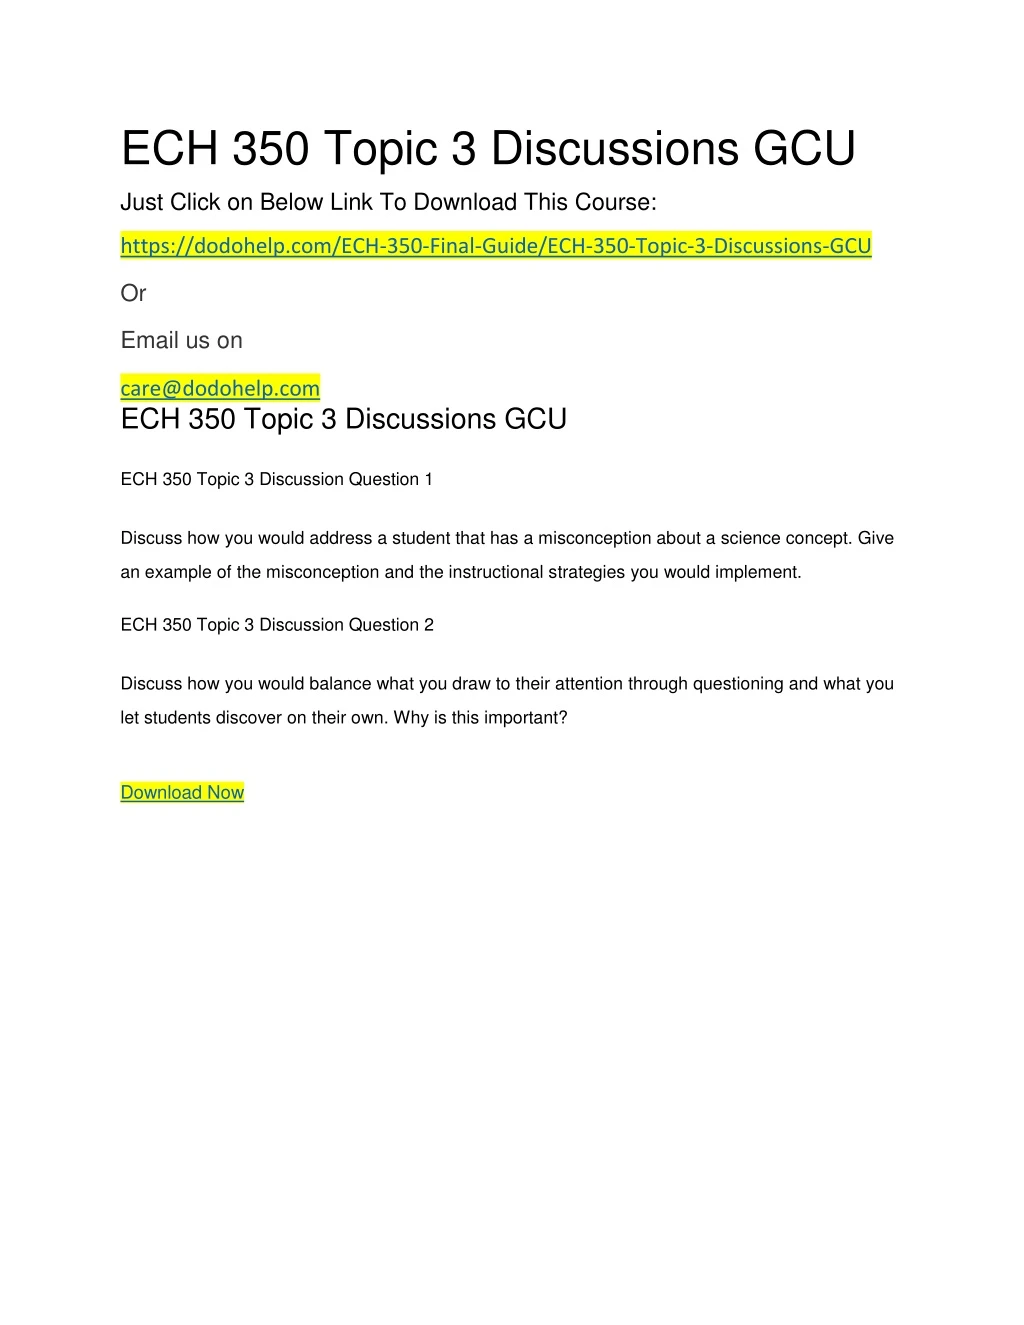 ech 350 topic 3 discussions gcu